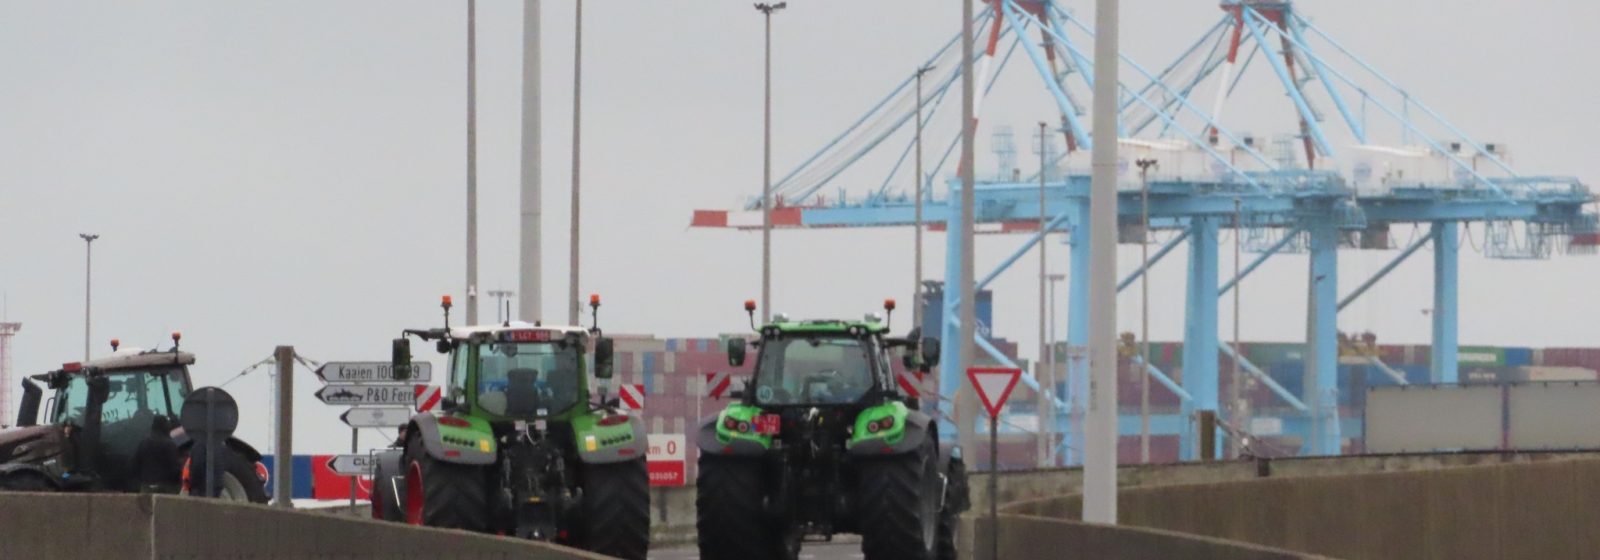 Blokkade boerenprotest in Zeebrugge